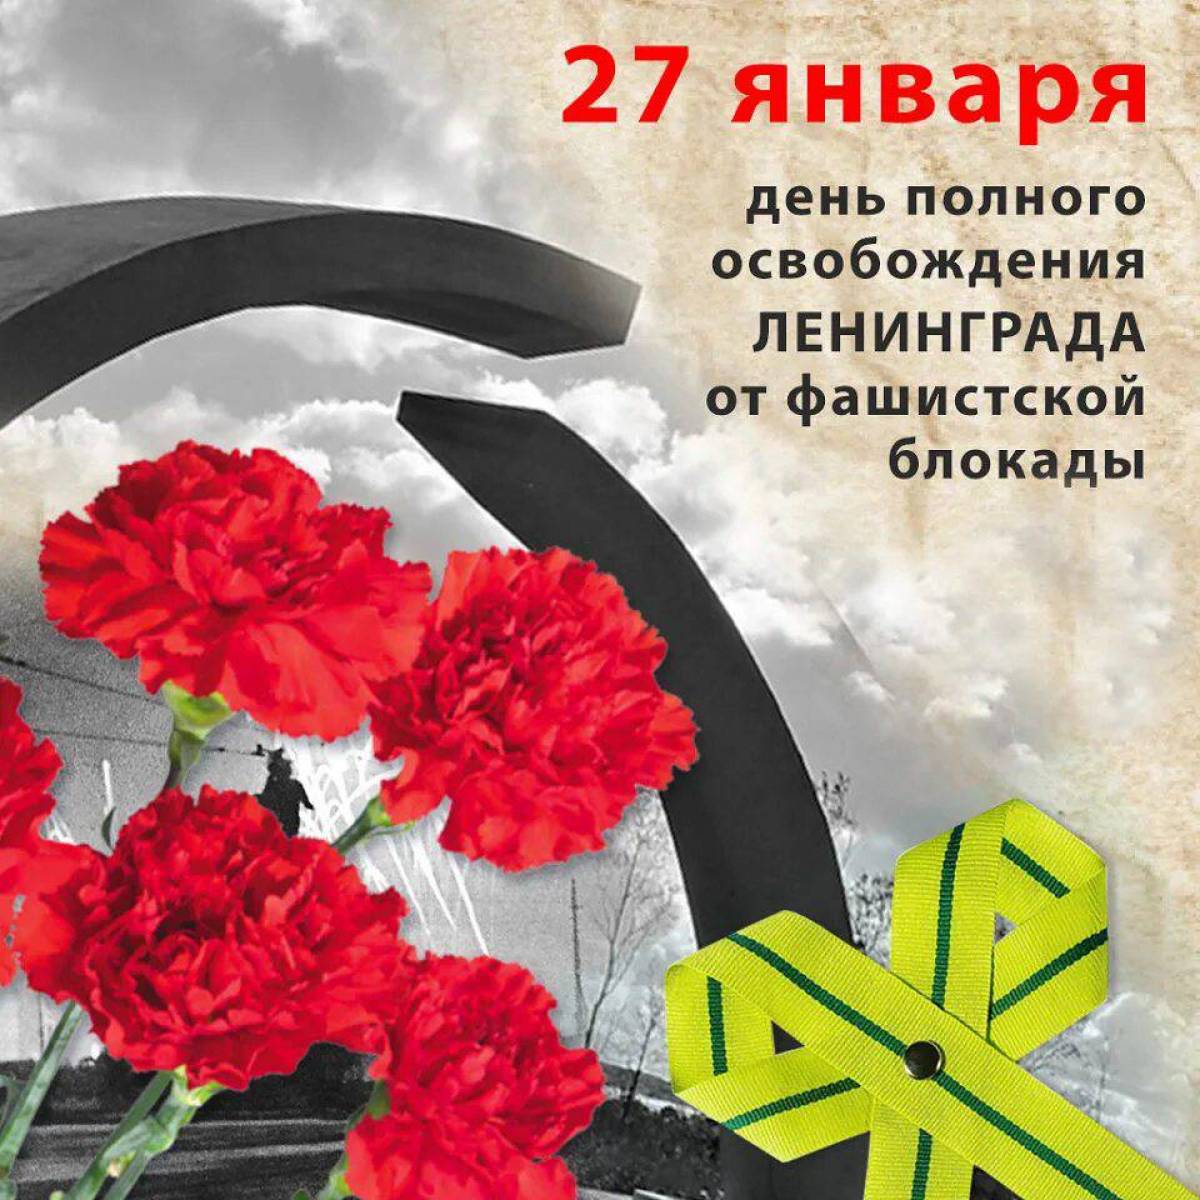 Лента блокады ленинграда #28